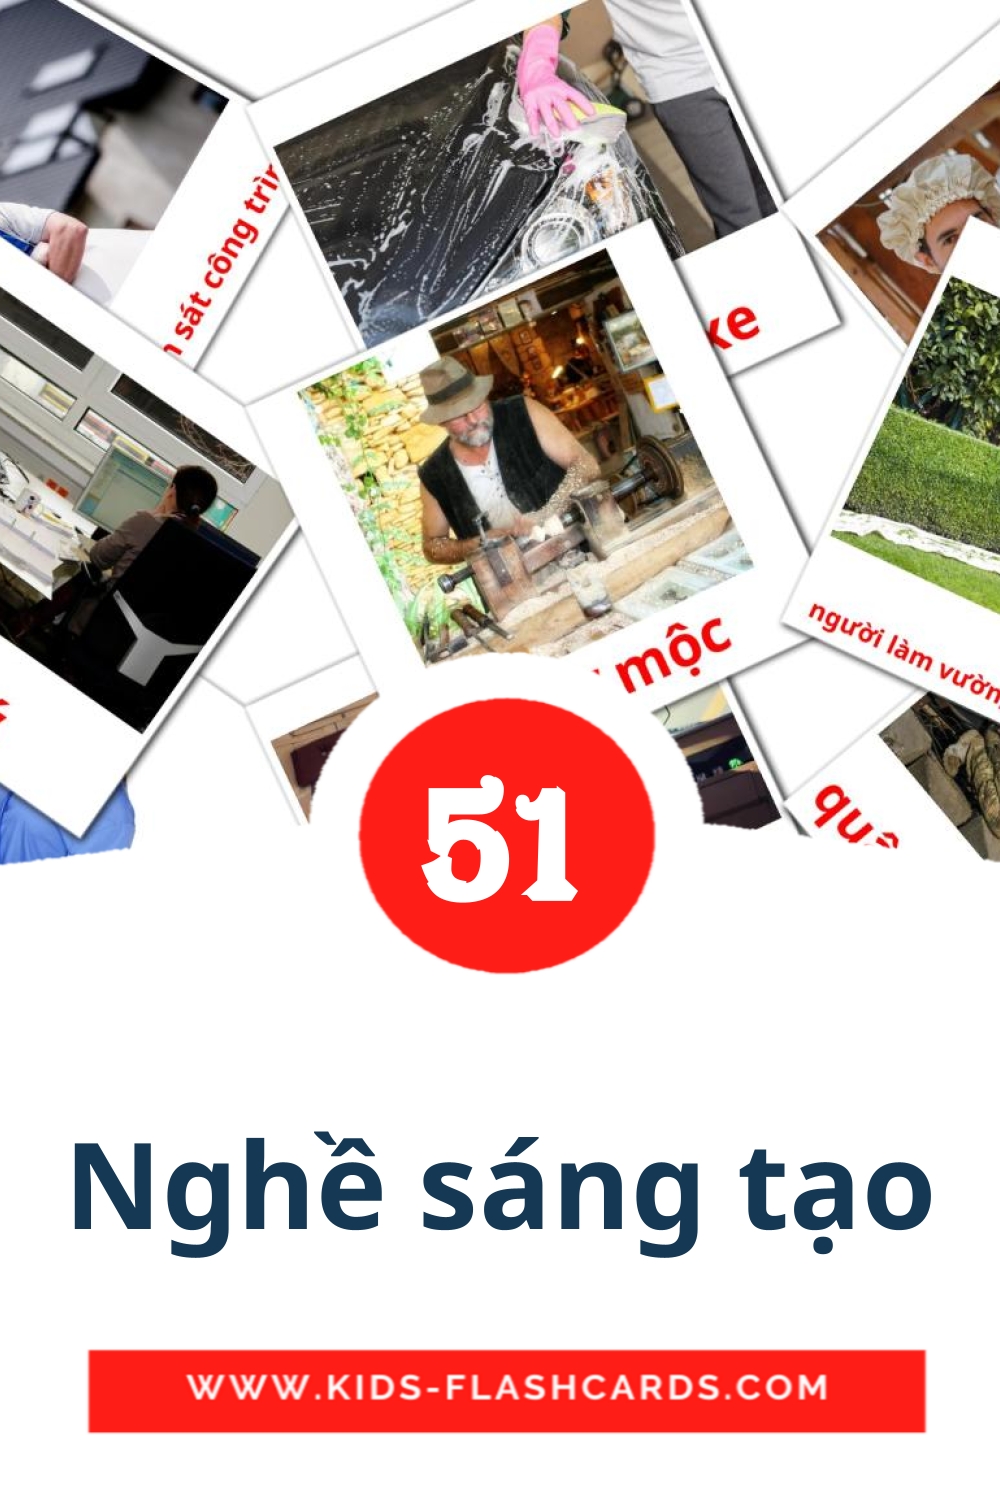 51 carte illustrate di Nghề sáng tạo per la scuola materna in vietnamita